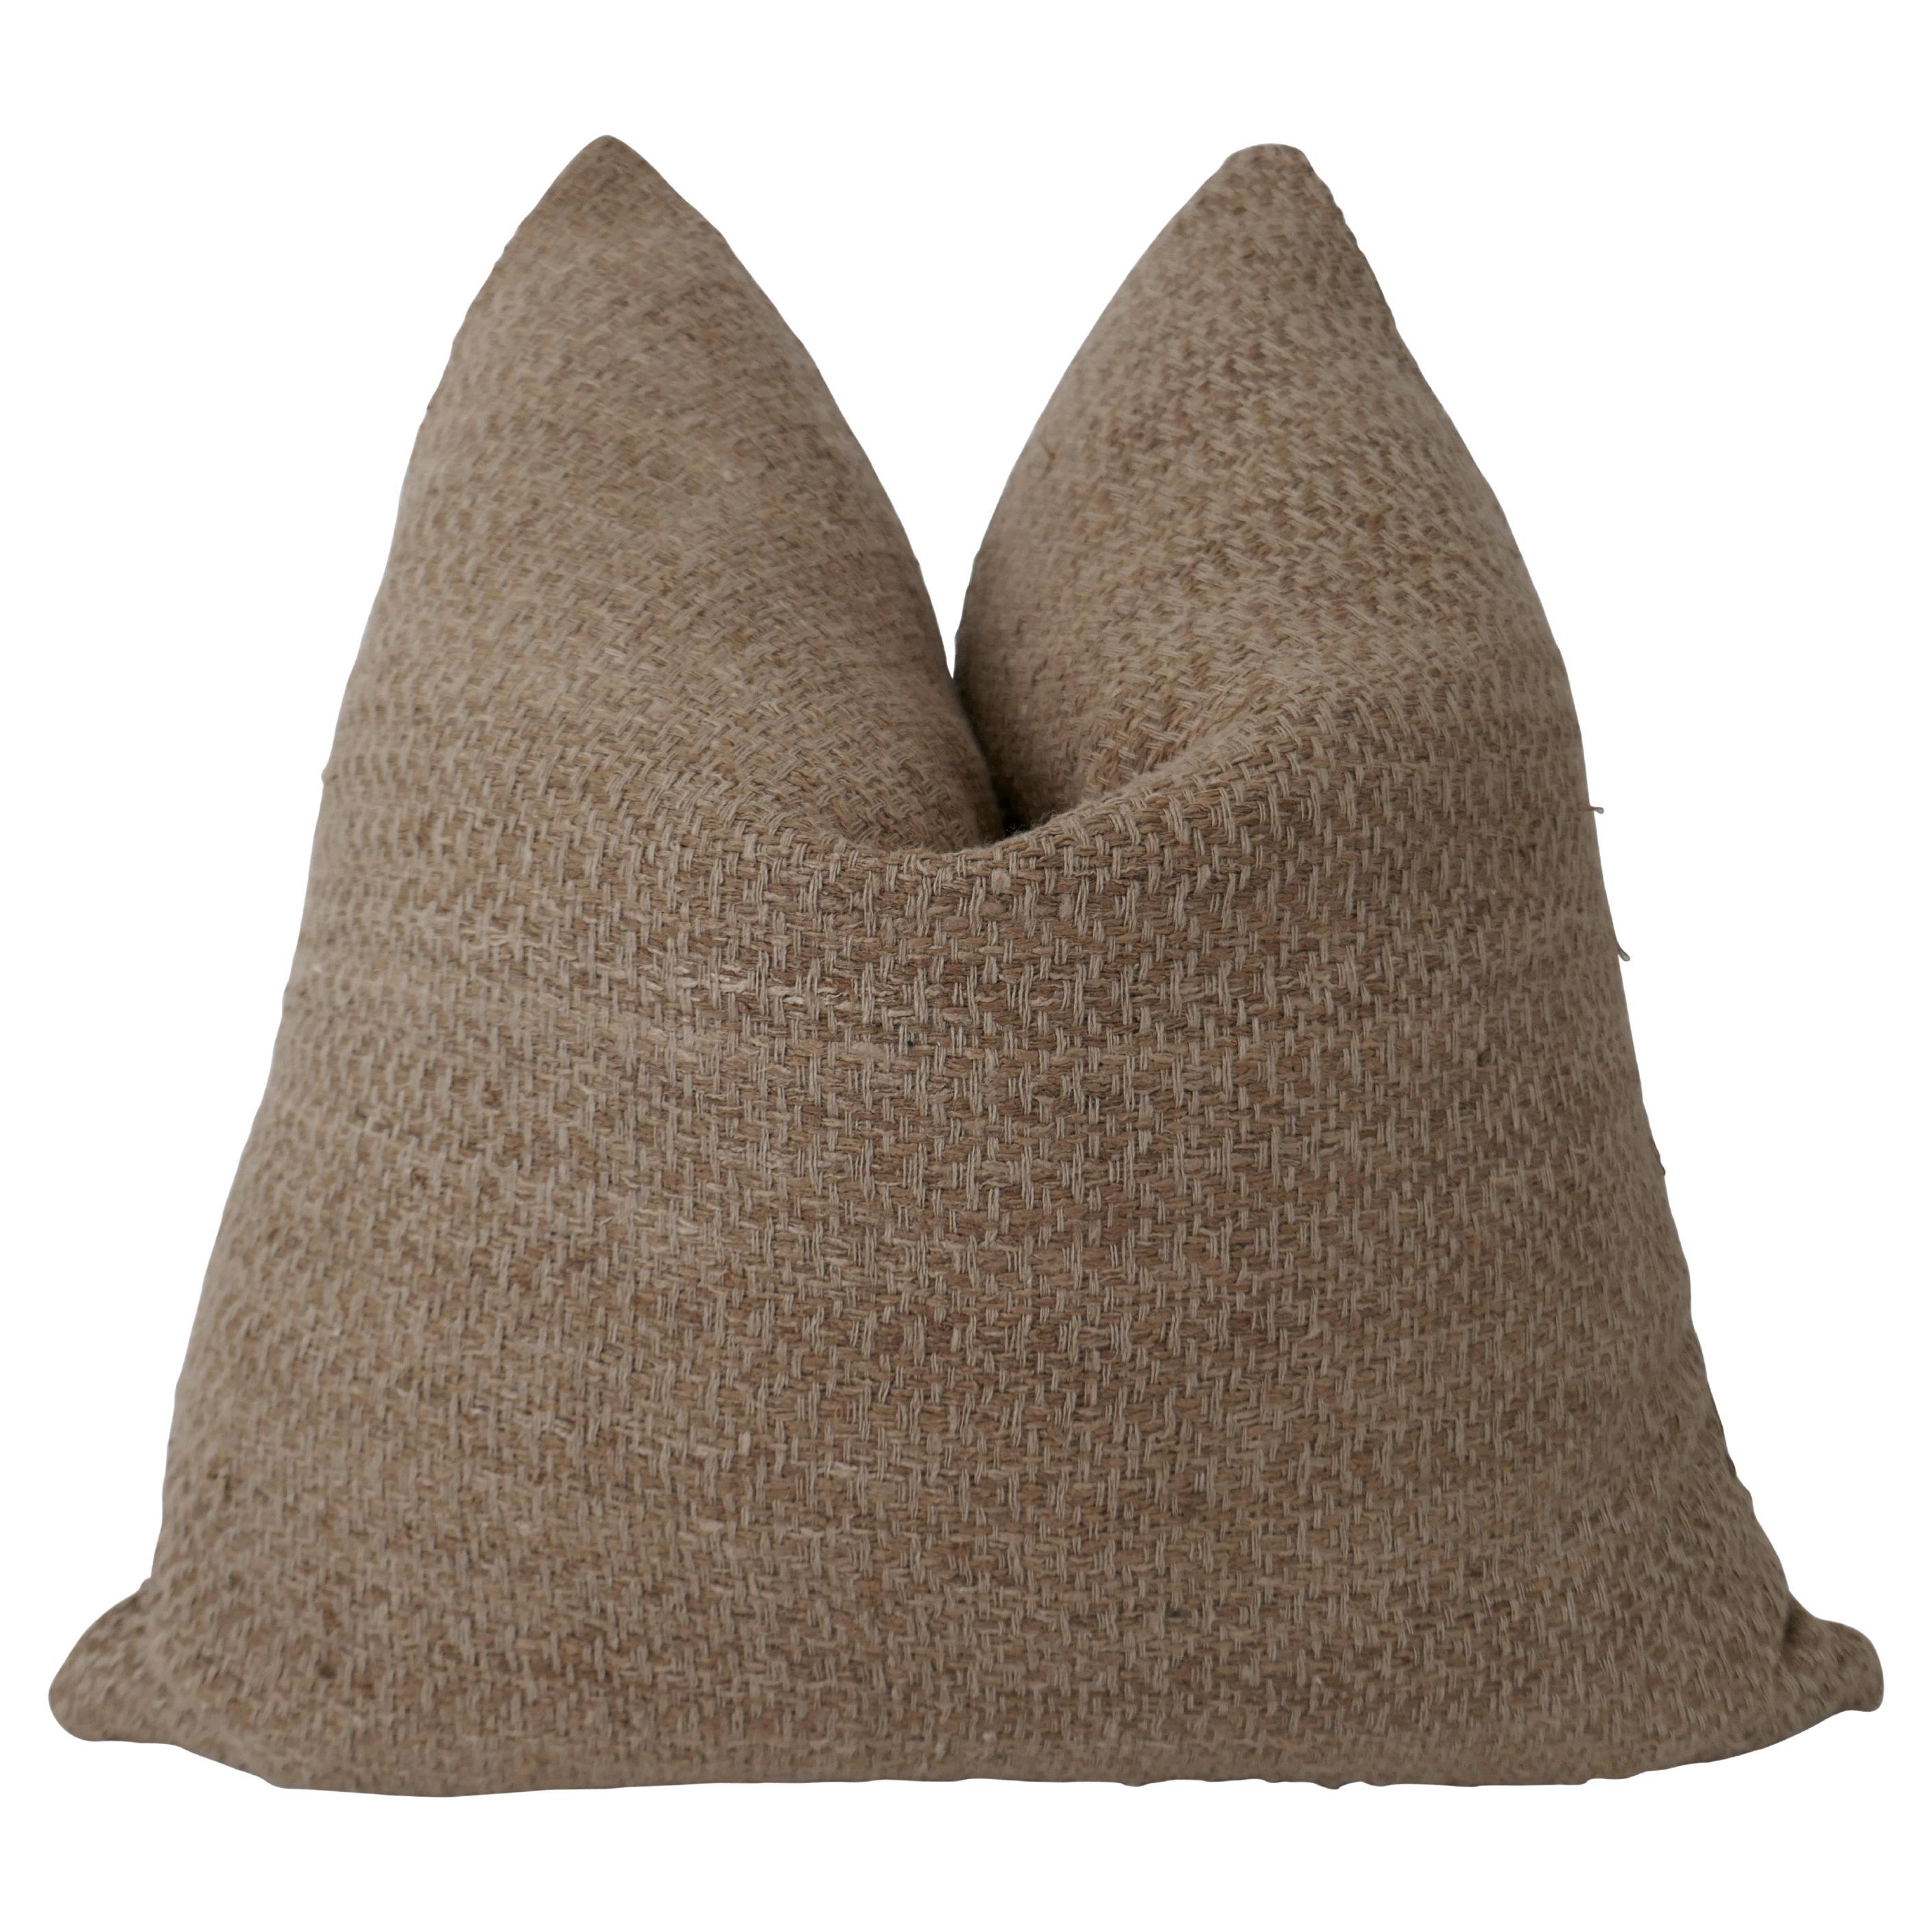 FI Camel Basket Weave & Linen Pillow